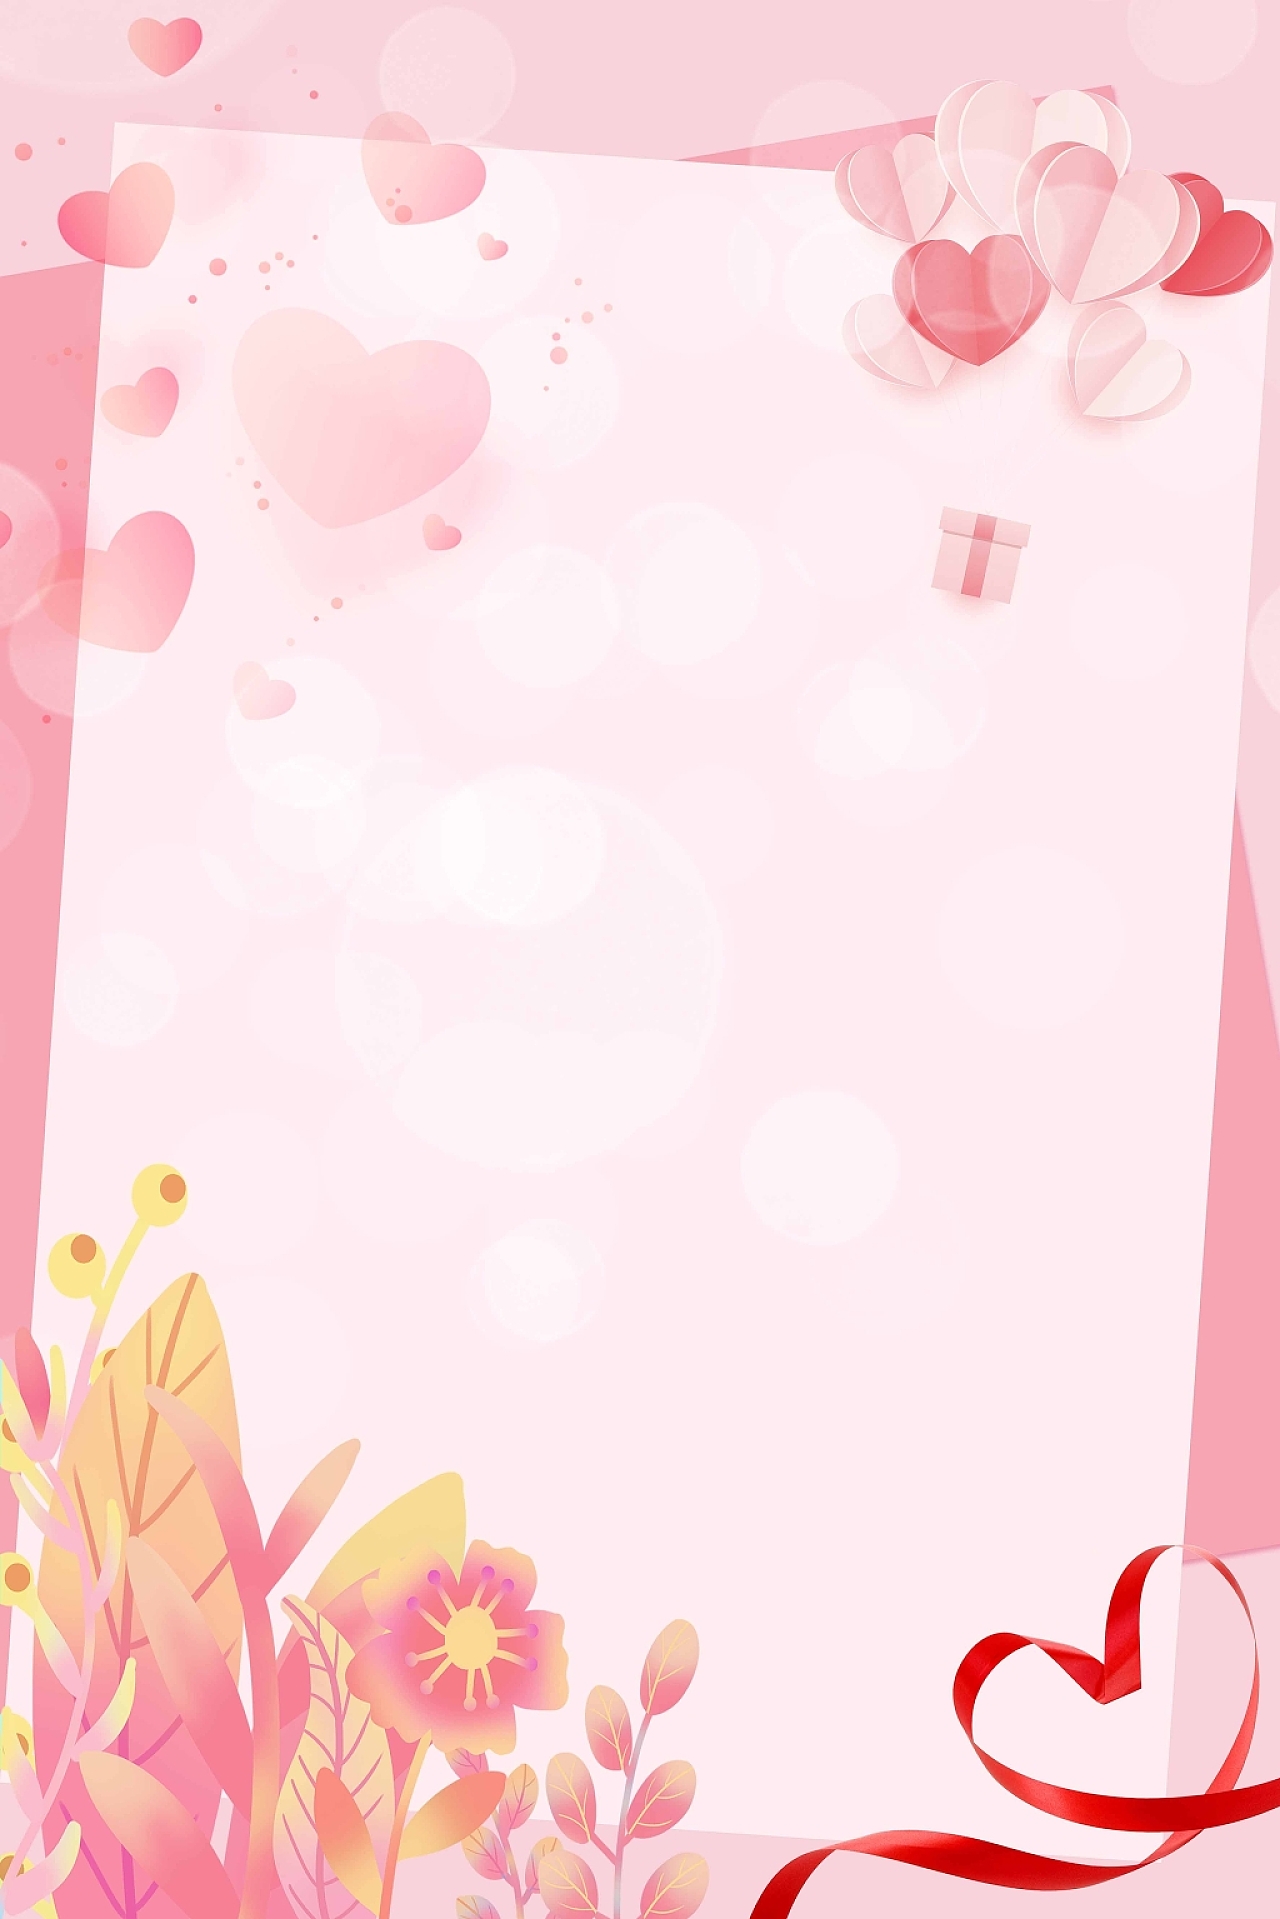 粉色唯美卡通爱心树叶花朵爱心边框海报背景